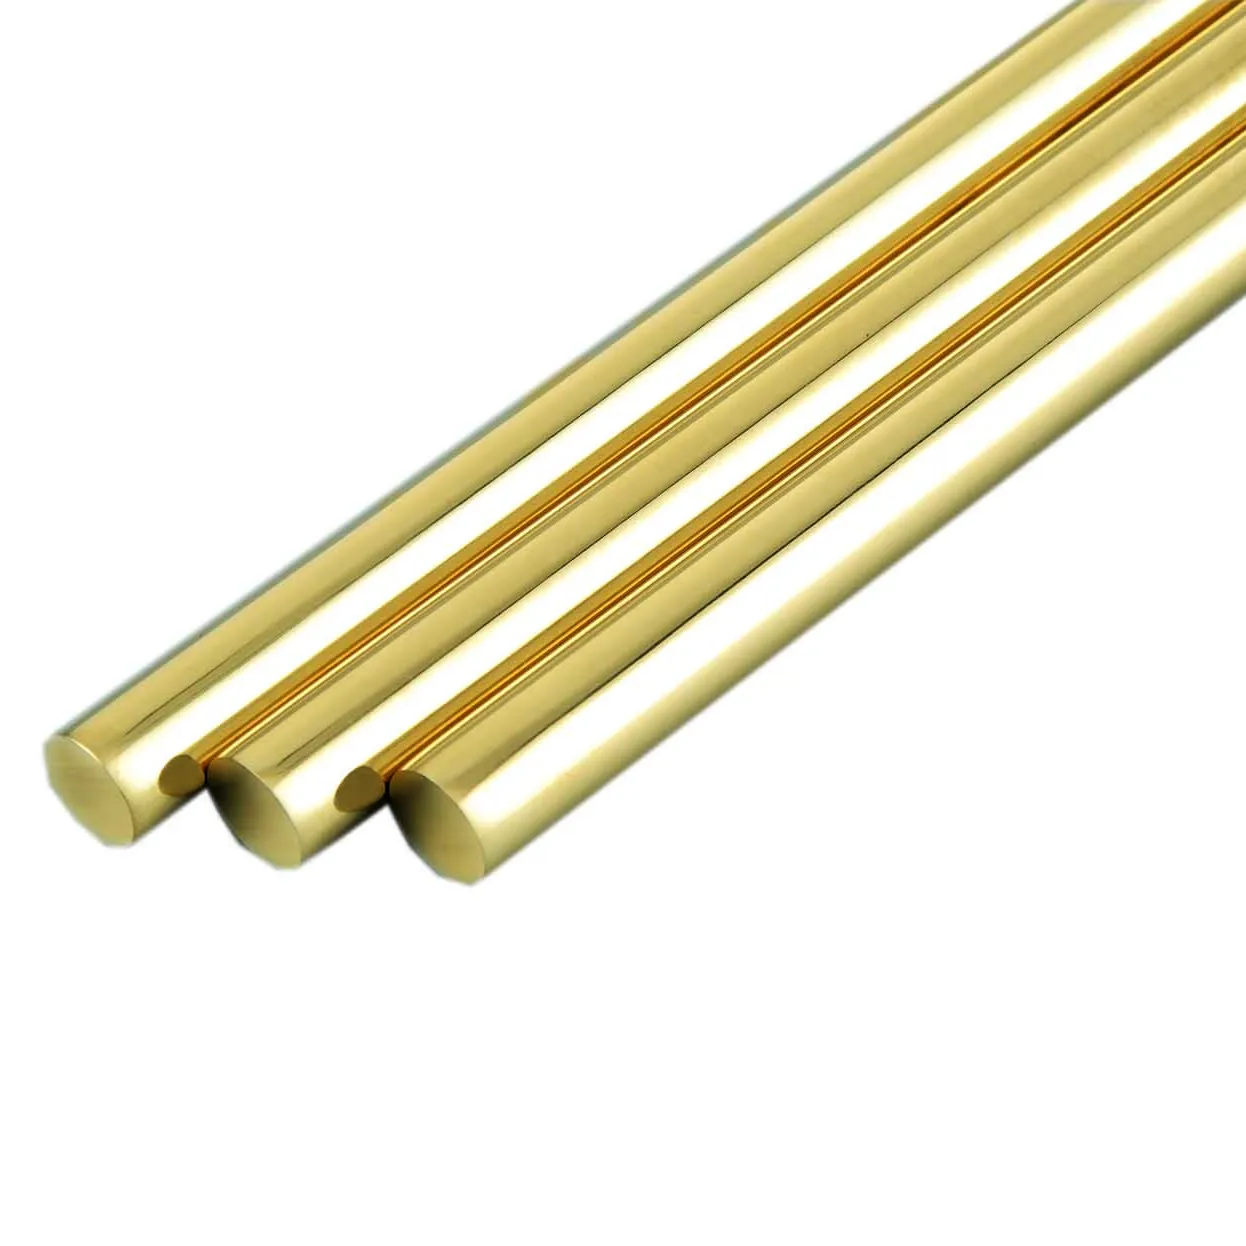 Lead-free Brass Rod